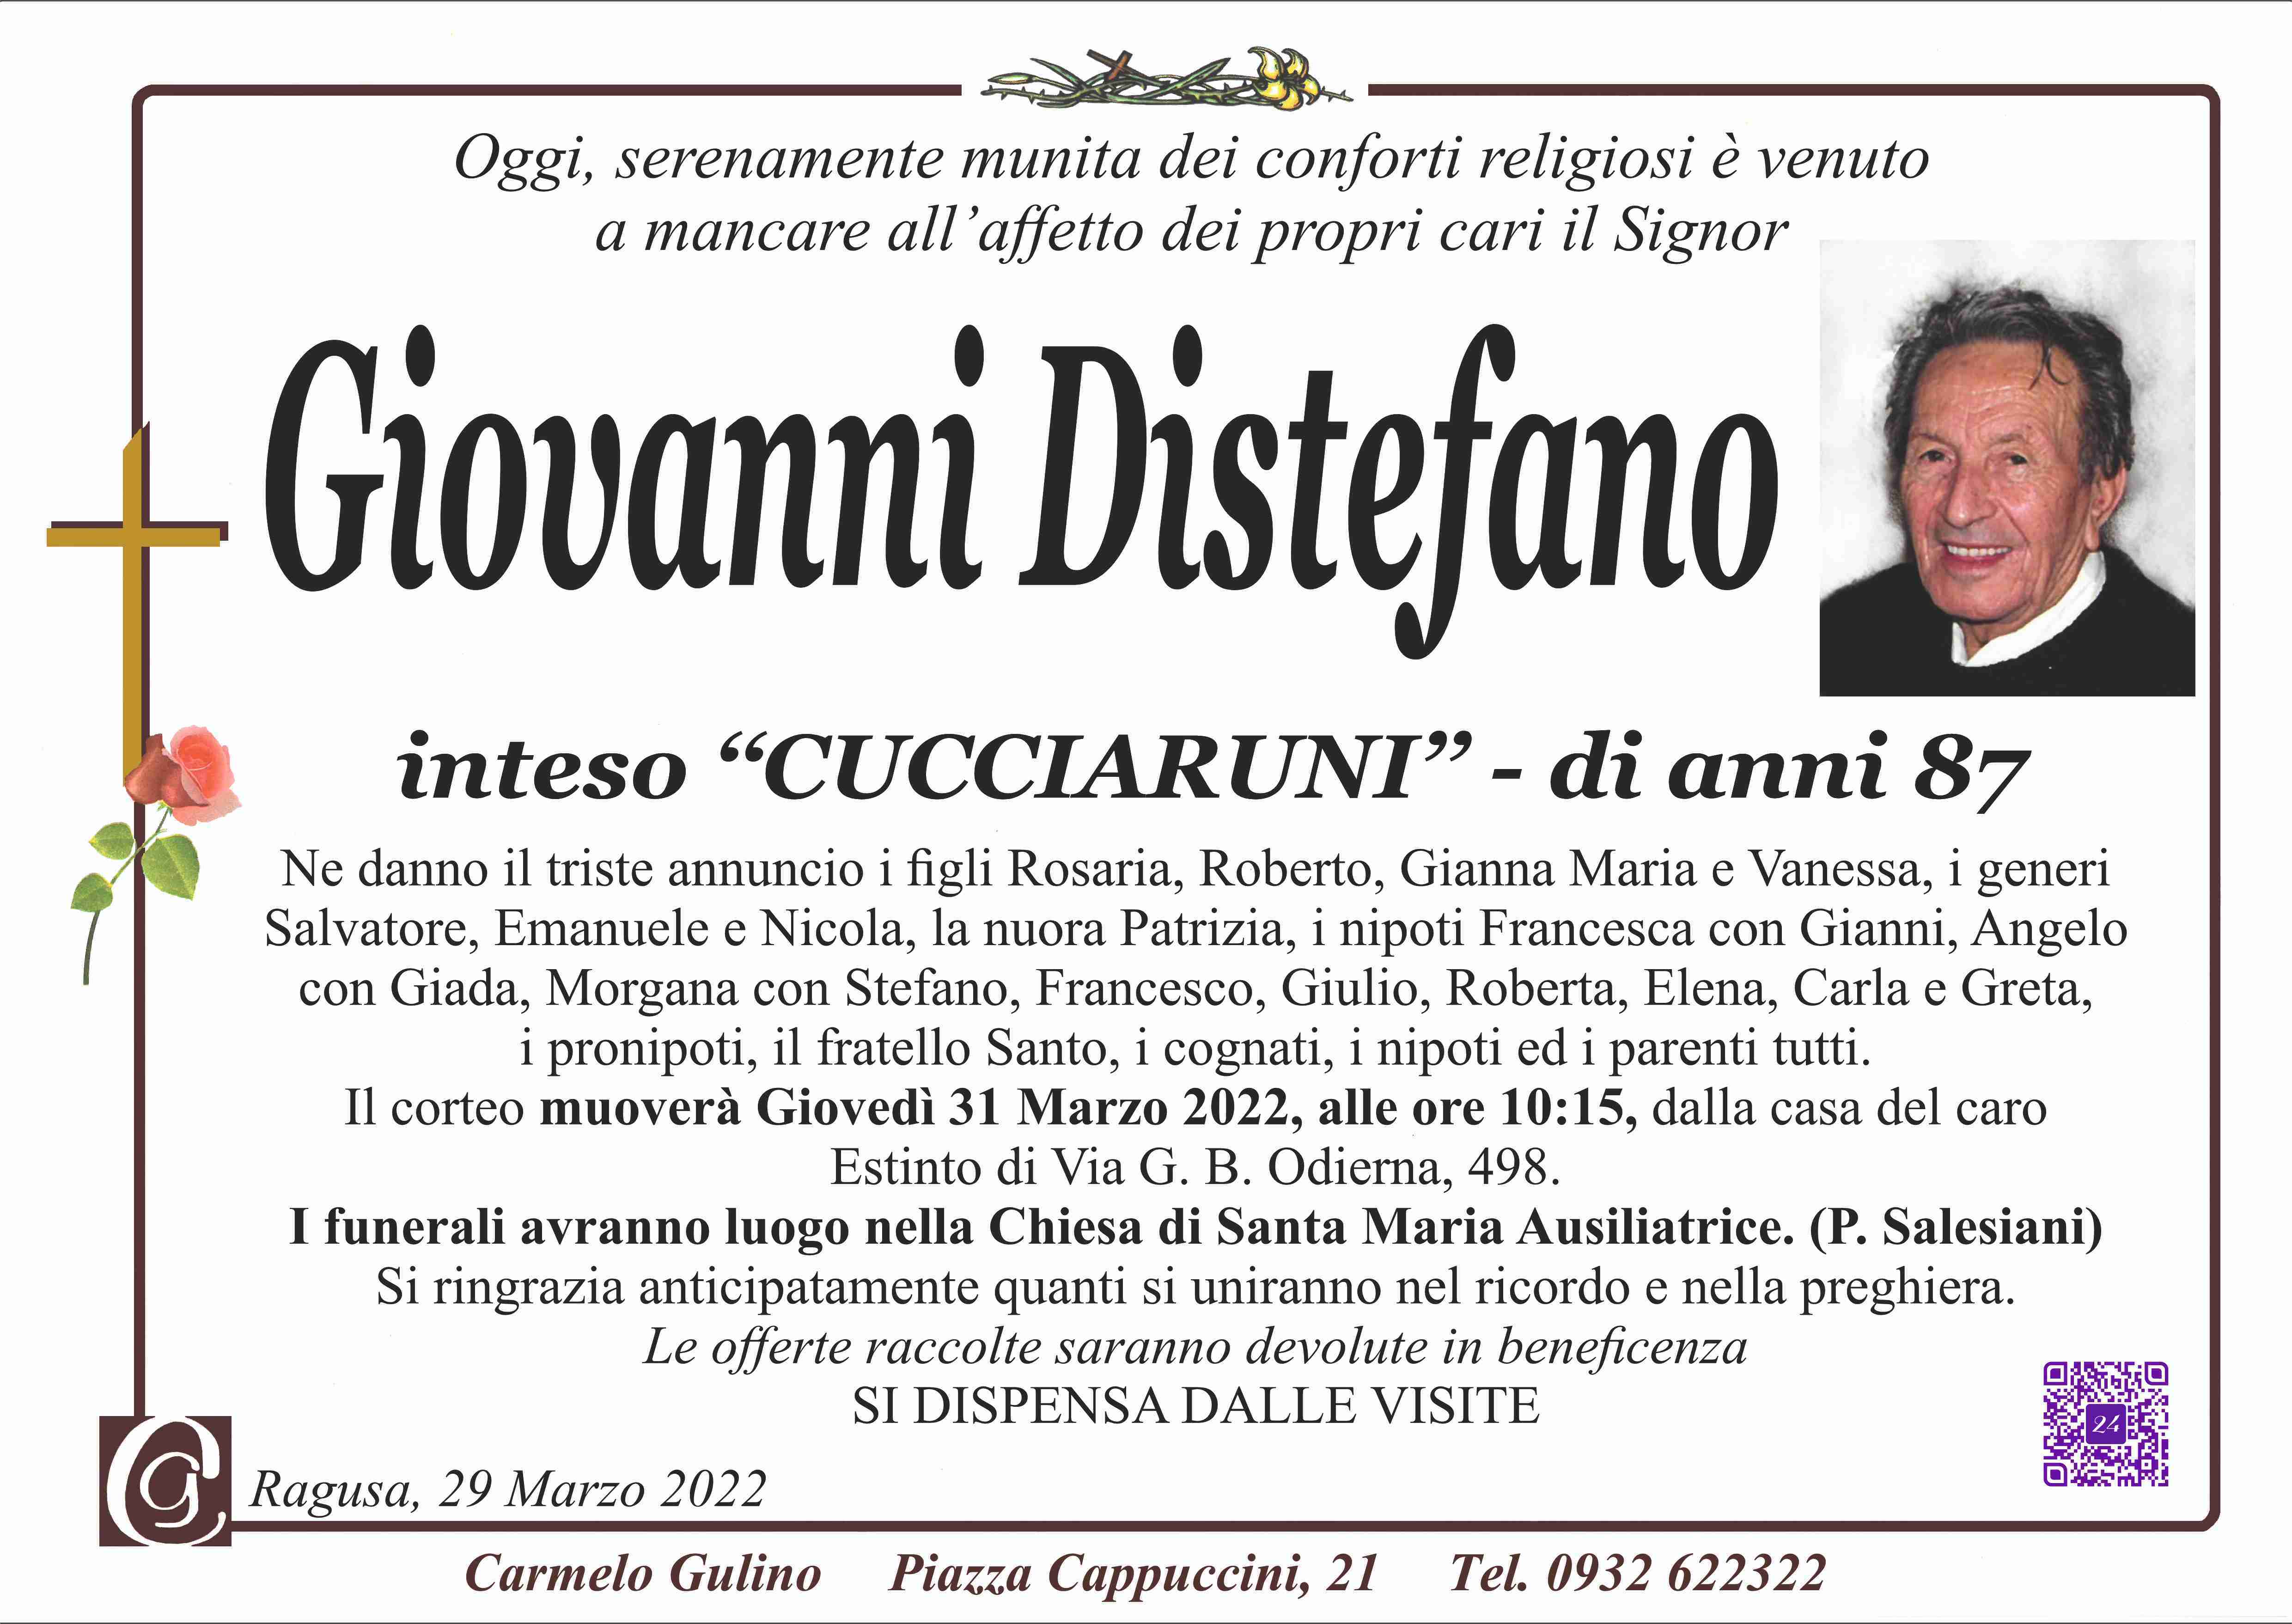 Giovanni Distefano